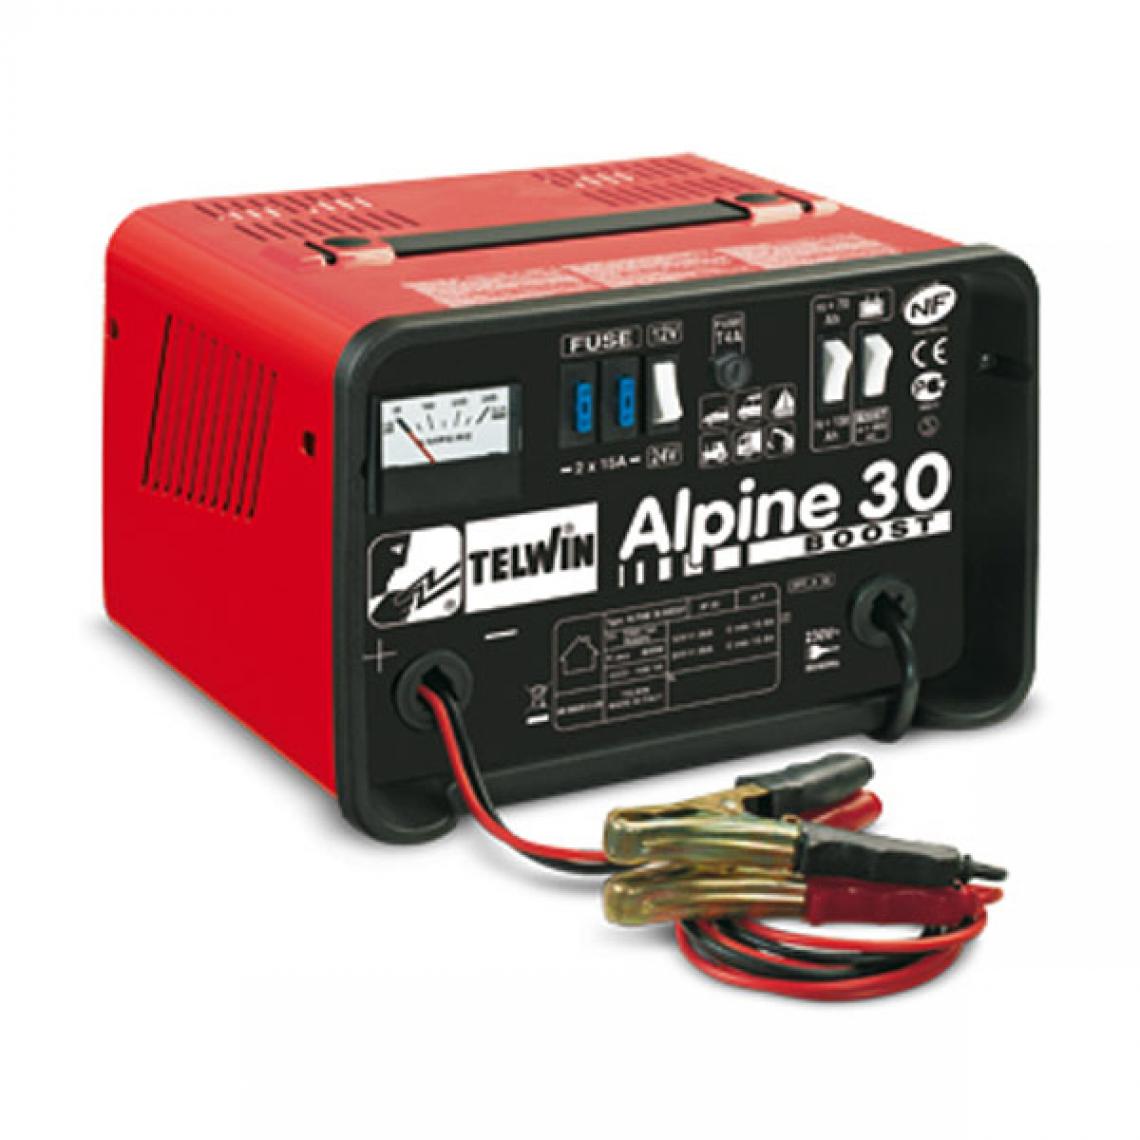 Telwin - Telwin - Chargeur de batterie auto 230V 12-24V - Alpine 30 Boost - Consommables pour outillage motorisé